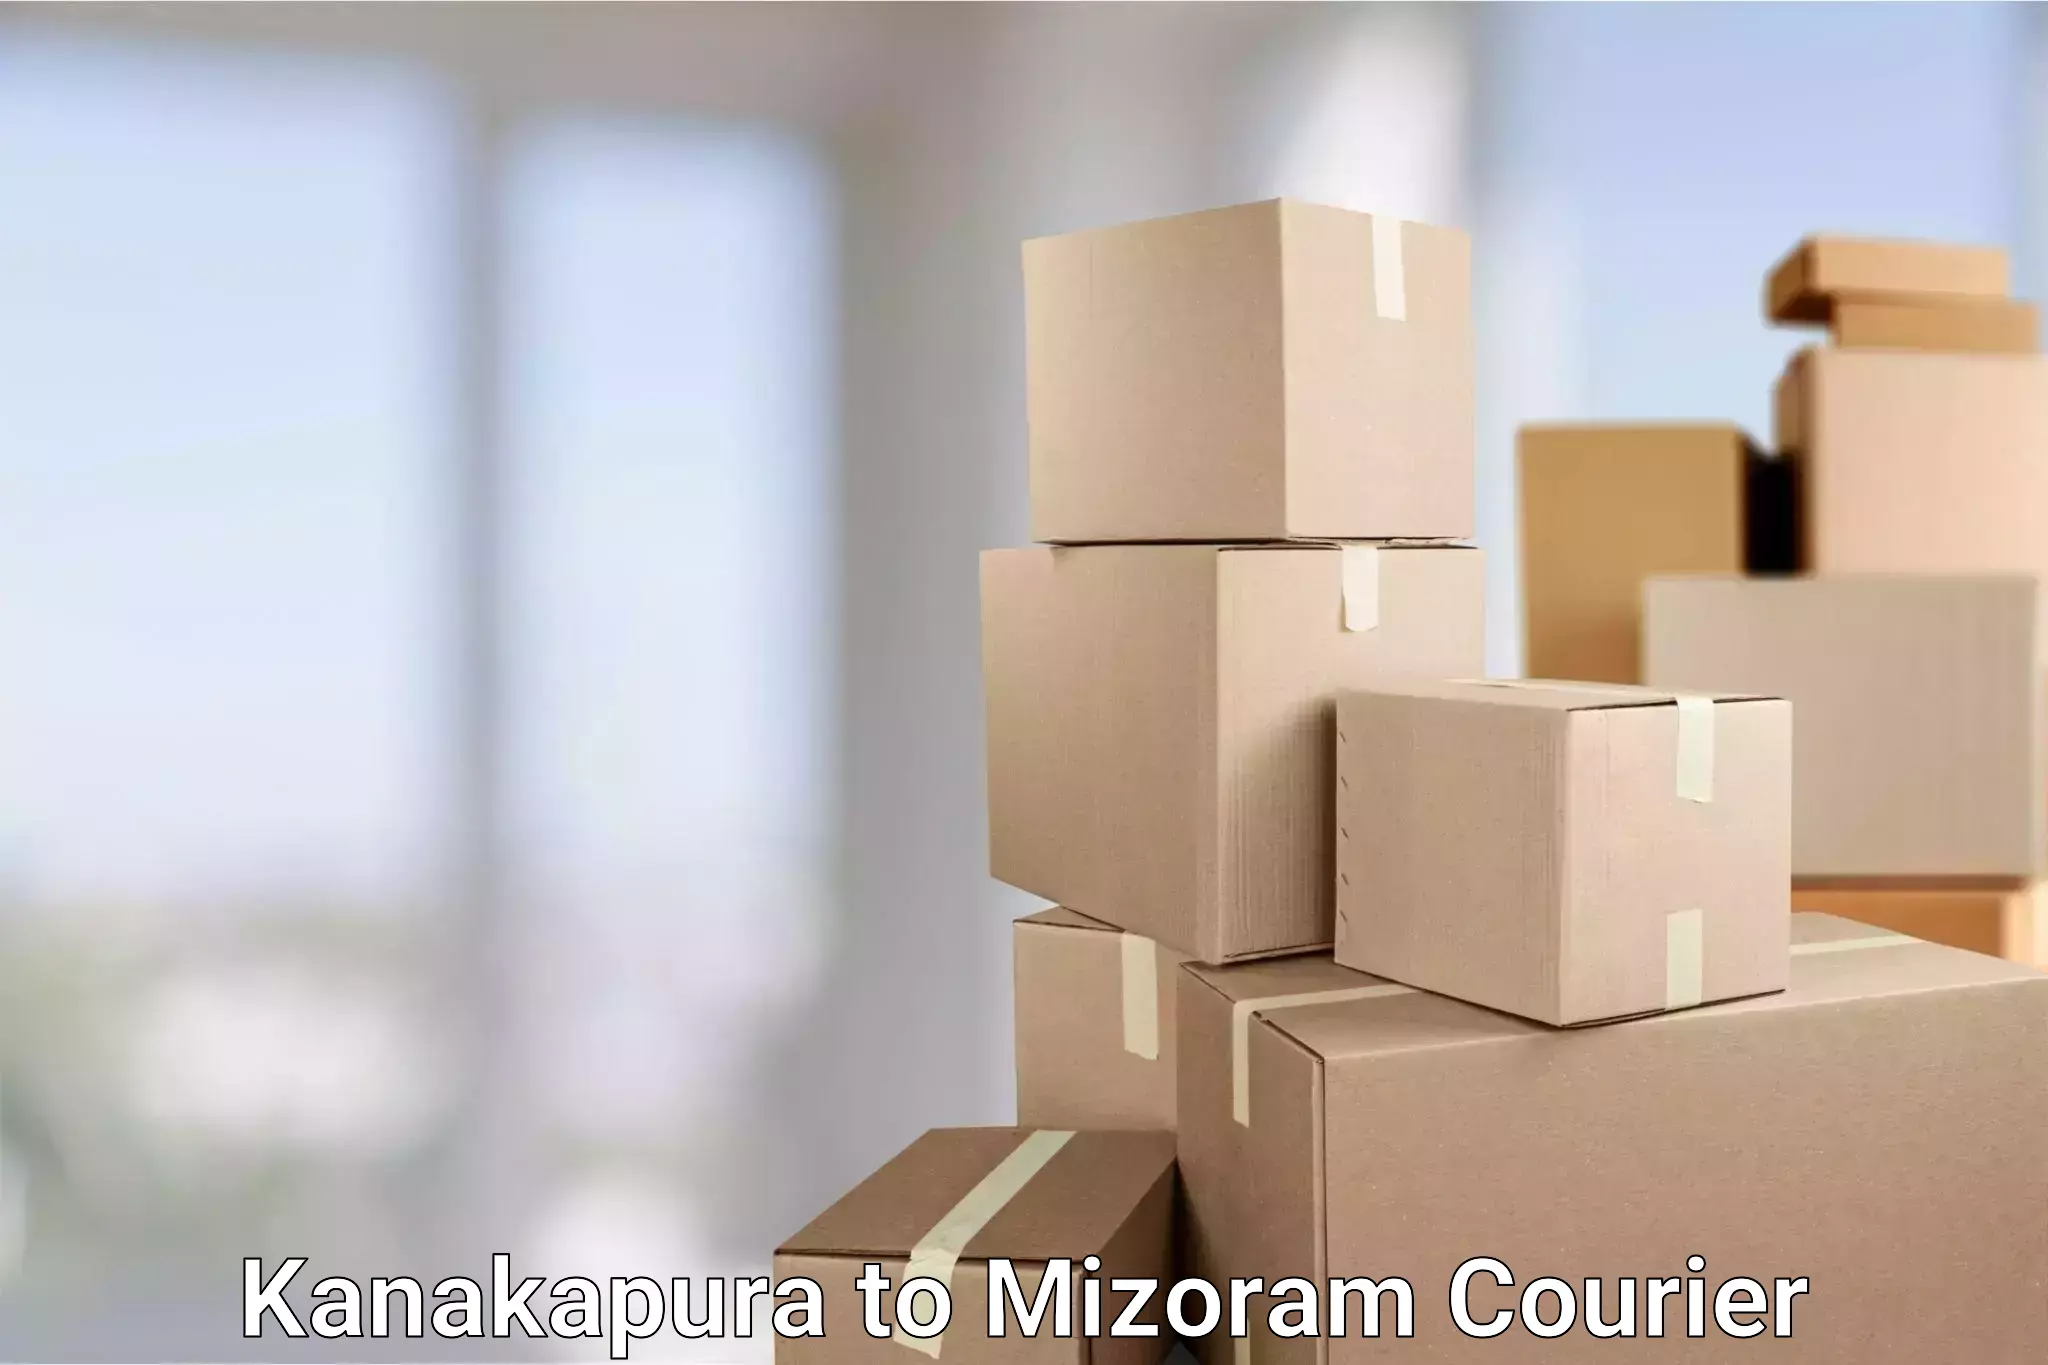 Multi-city courier Kanakapura to Mizoram